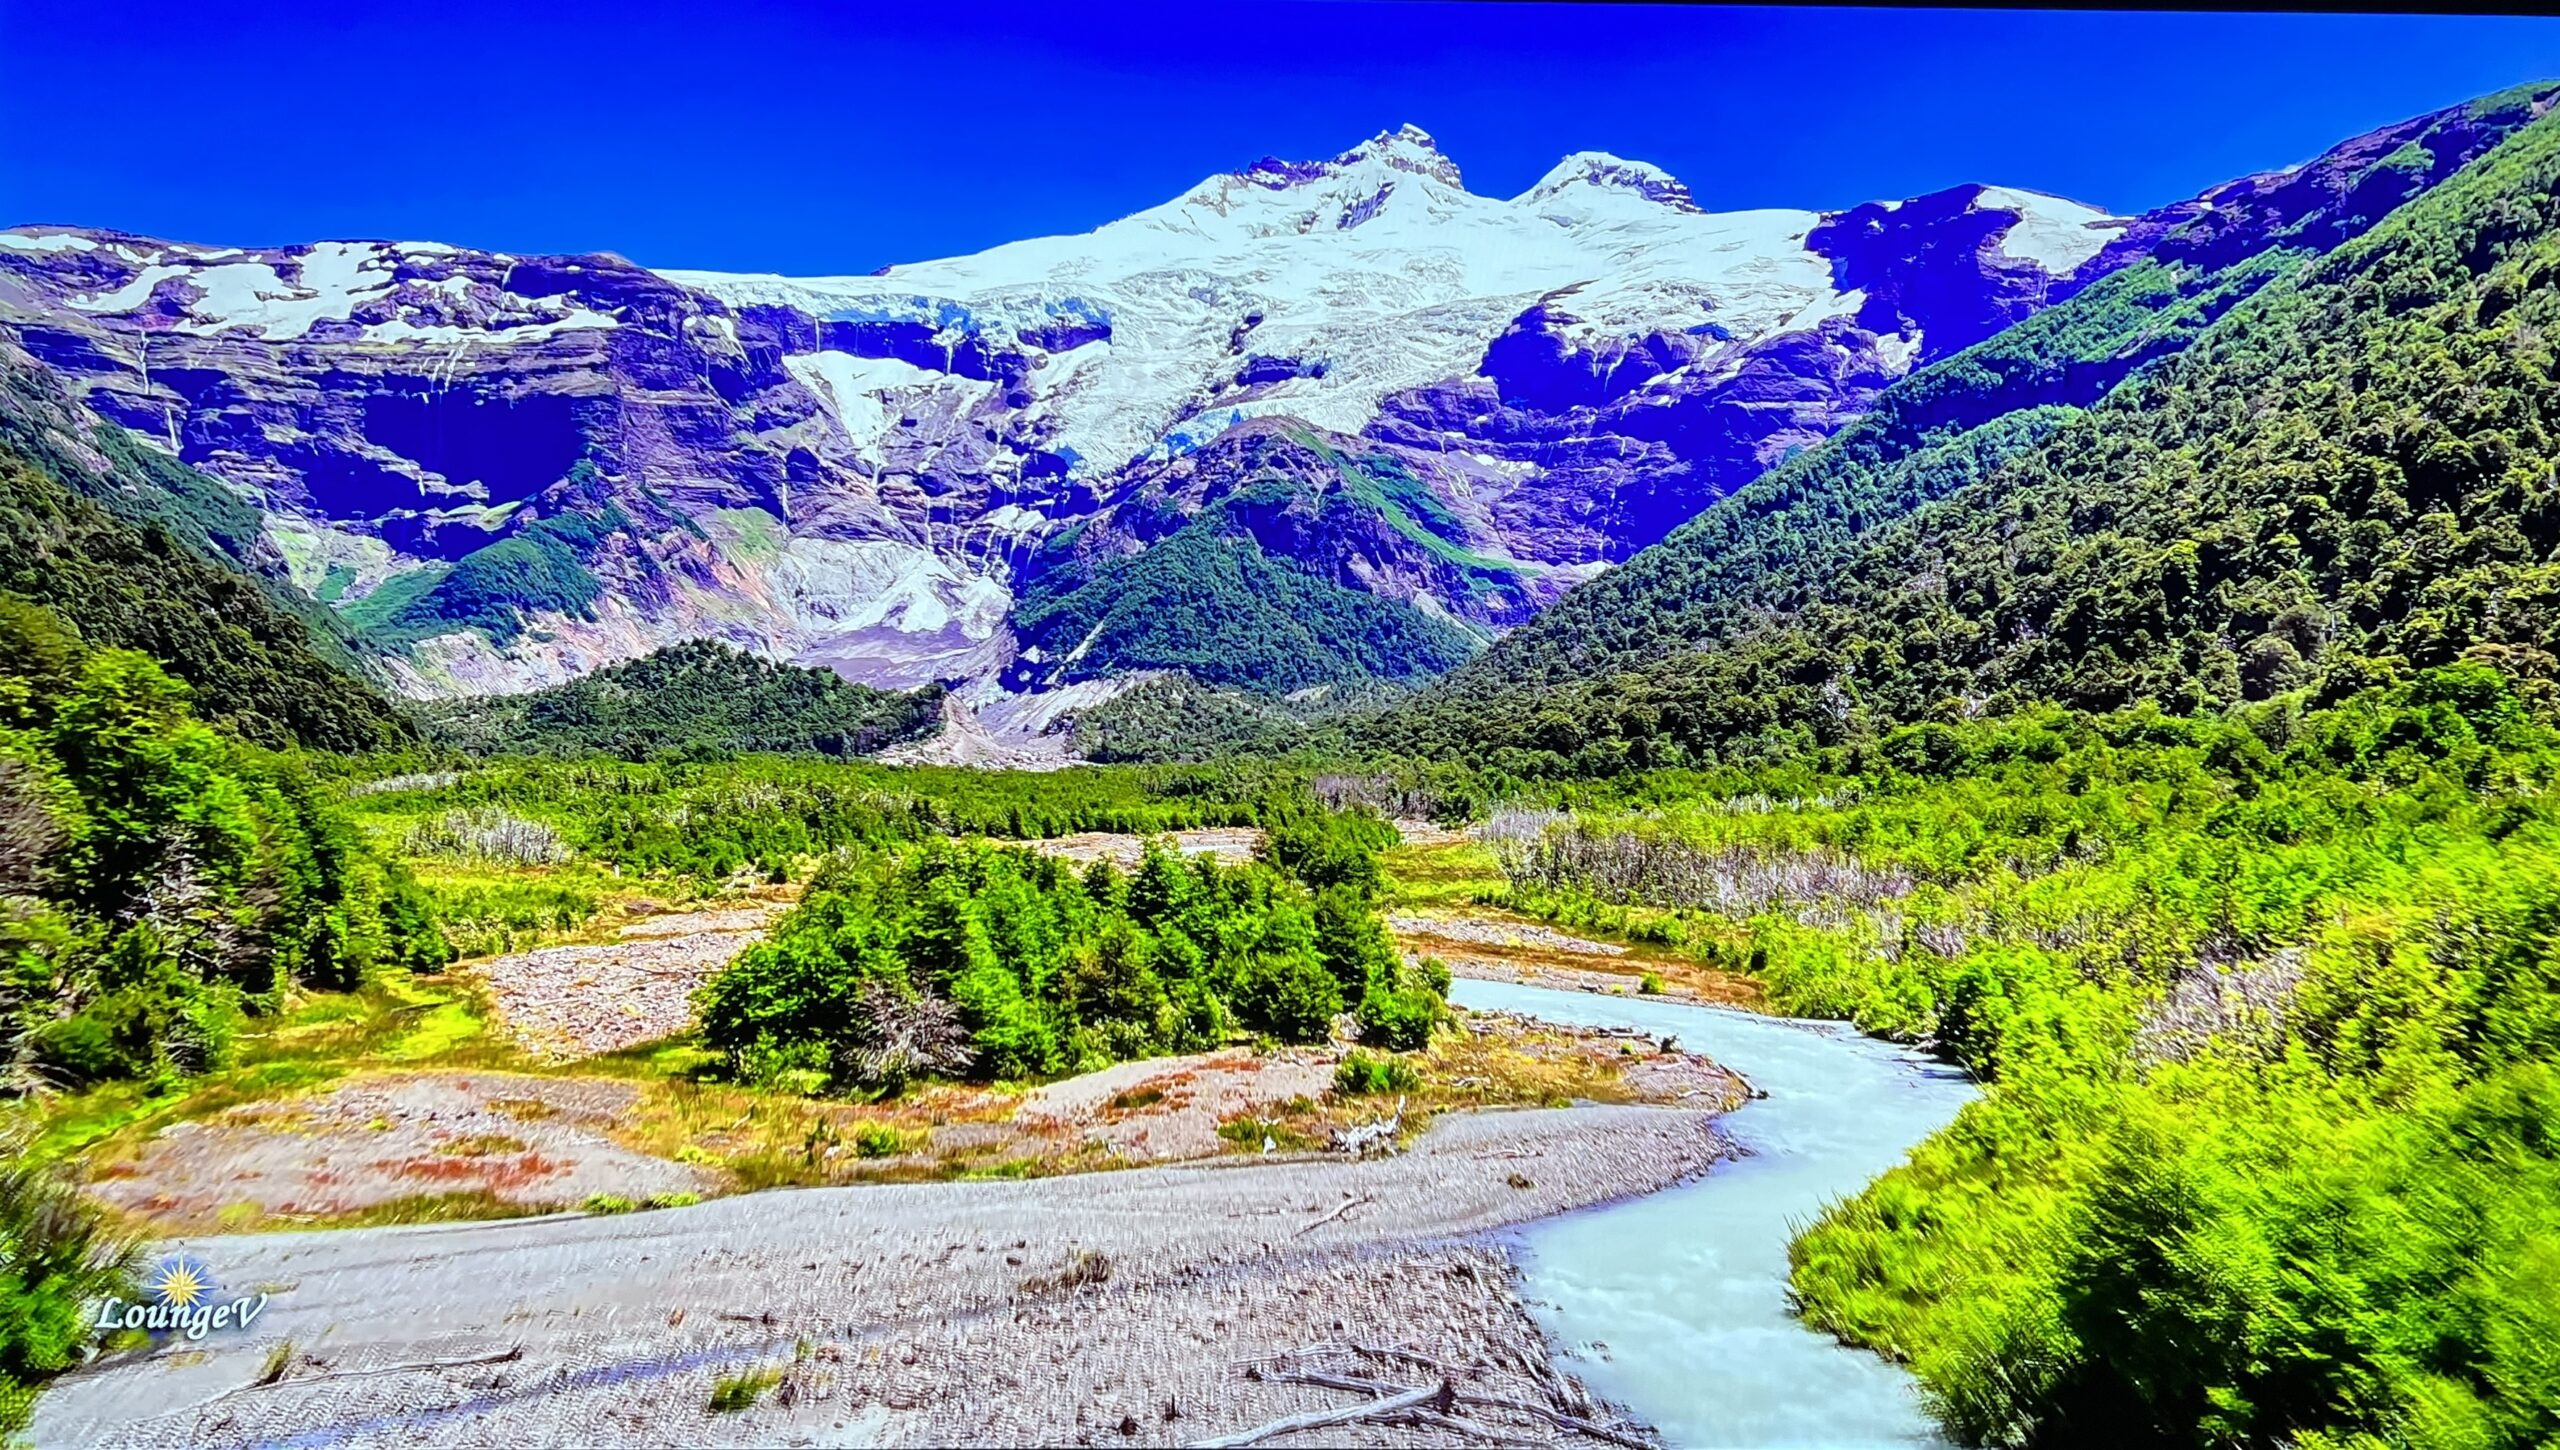 Kadr z filmu YouTube "Incredible Patagonia" przed kalibracją 